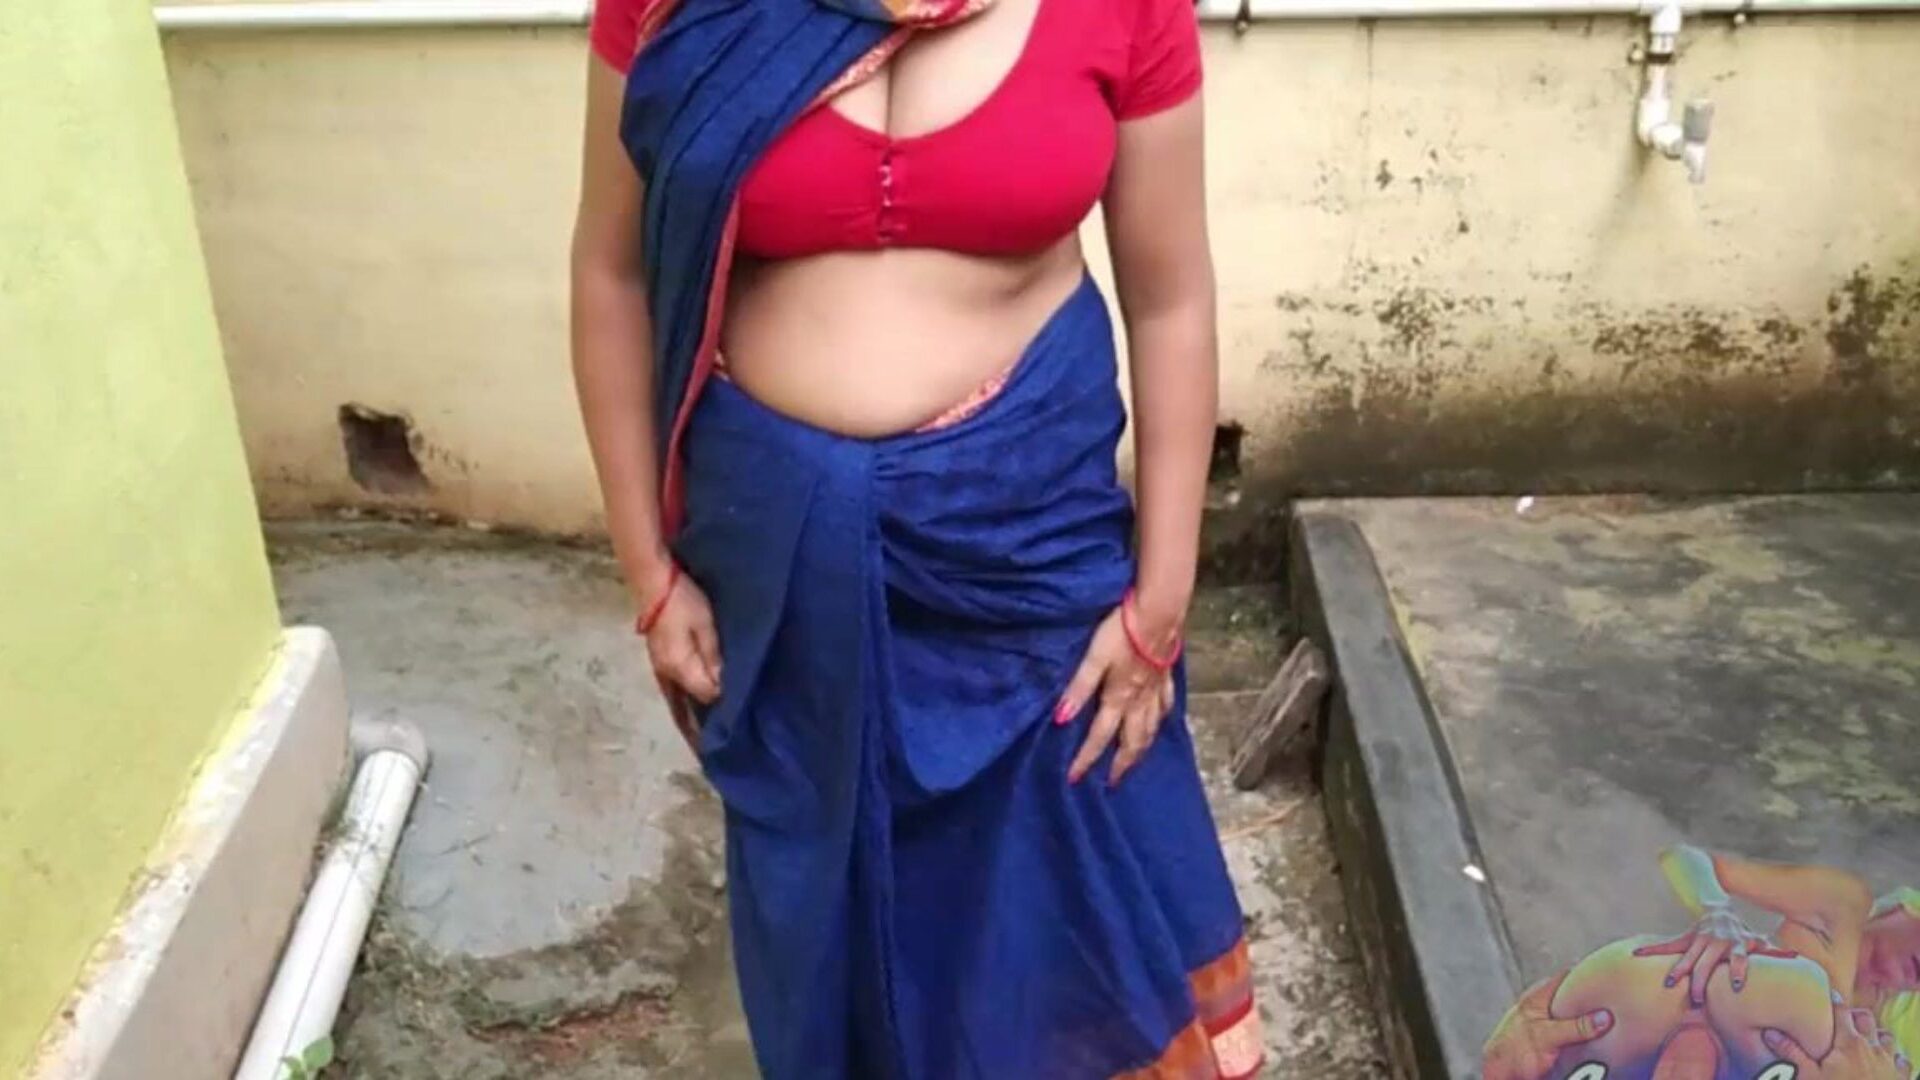 bhabhi en sari bleu pisse dans le jardin montrant sa chatte menstruelle